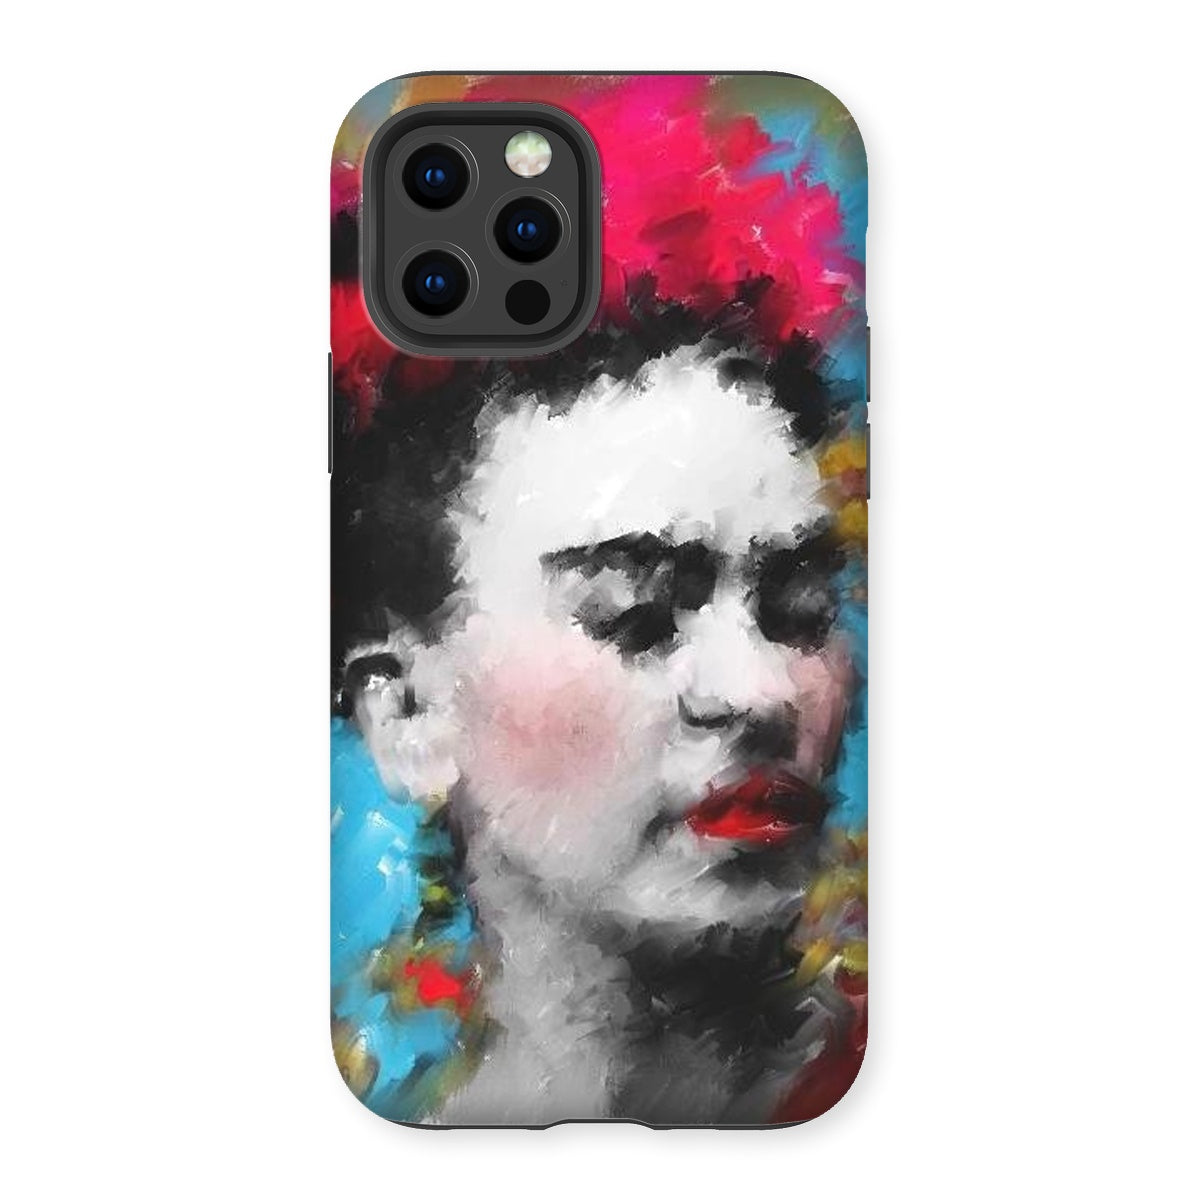 Frida Kahlo - Portrait Tough Phone Case